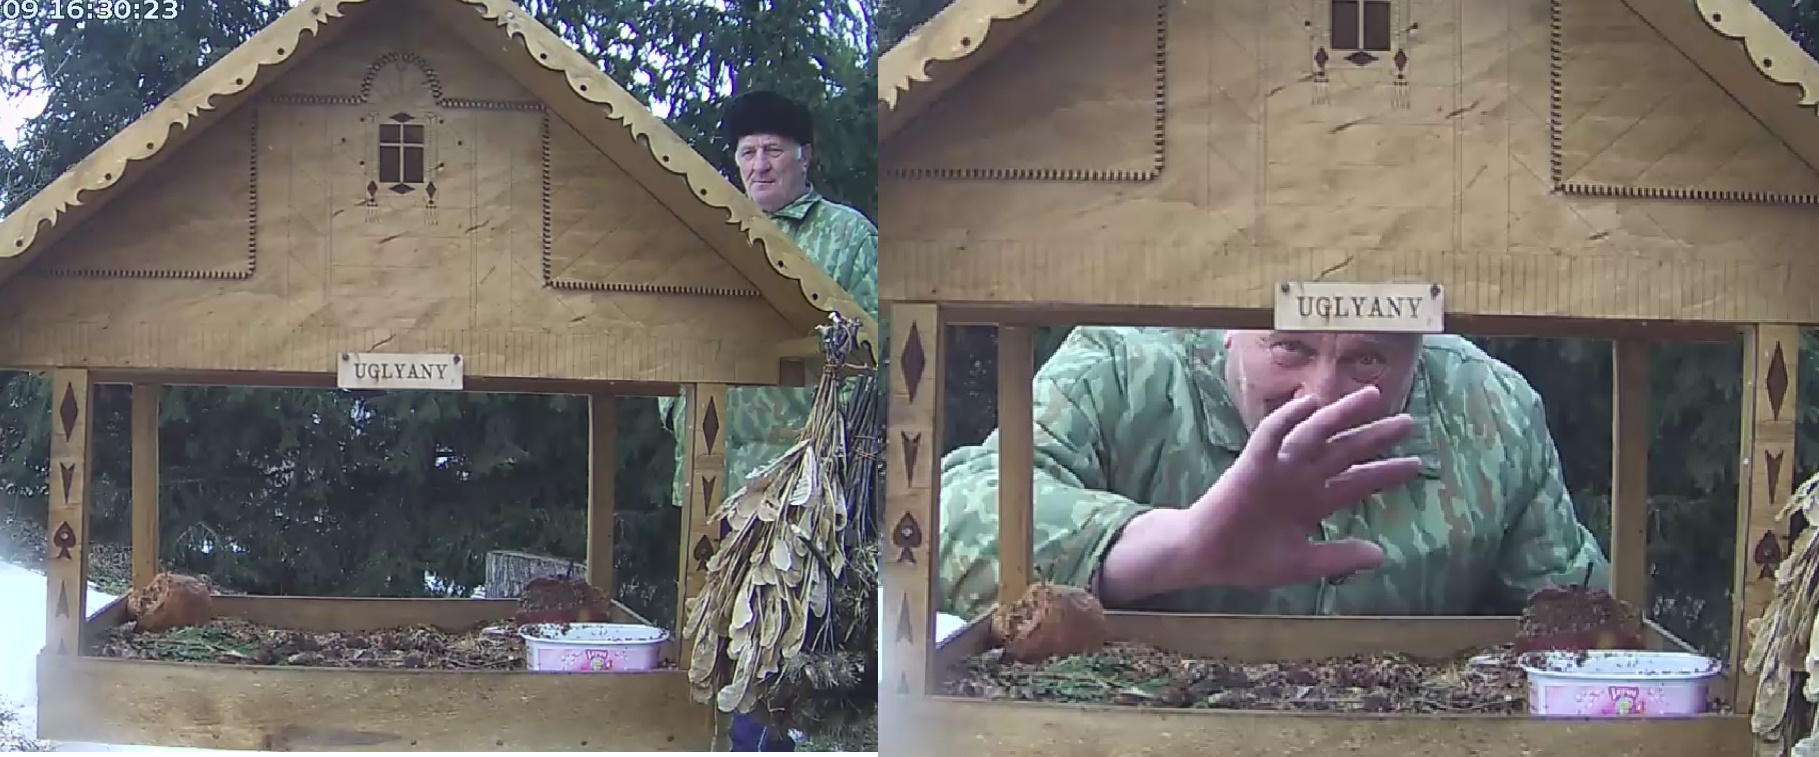 Спасибо Ивану Иванюковичу - страстному любителю птиц (именно его руки практически каждый день подсыпают корм в кормушку в Углянах)!